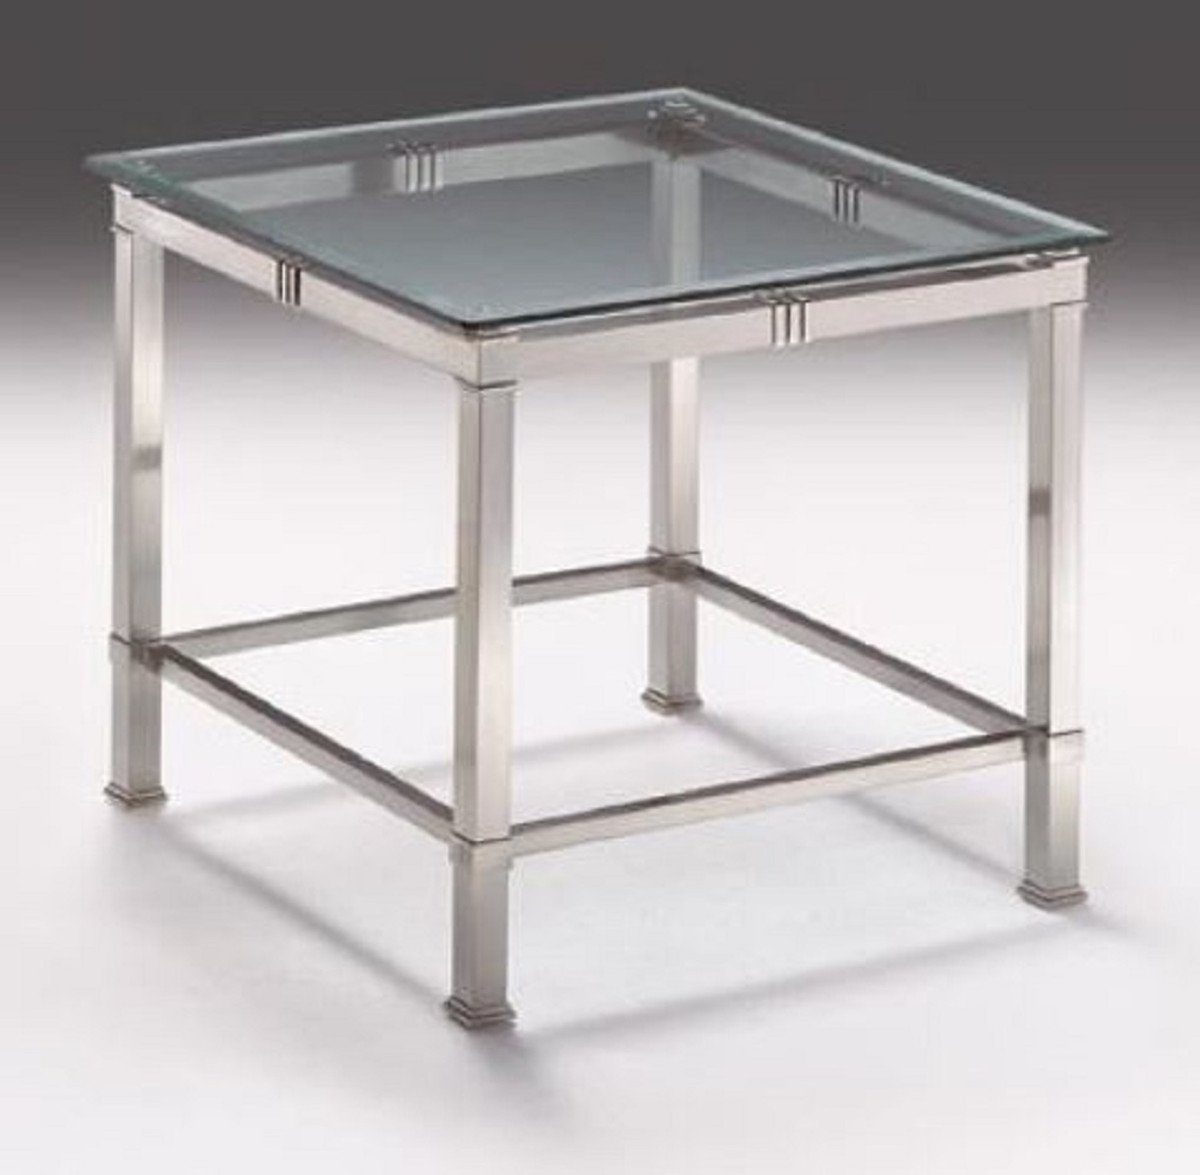 Casa Padrino Beistelltisch Luxus Beistelltisch Silber 60 x 60 x H. 48 cm - Quadratischer Messing Tisch mit Glasplatte - Luxus Möbel